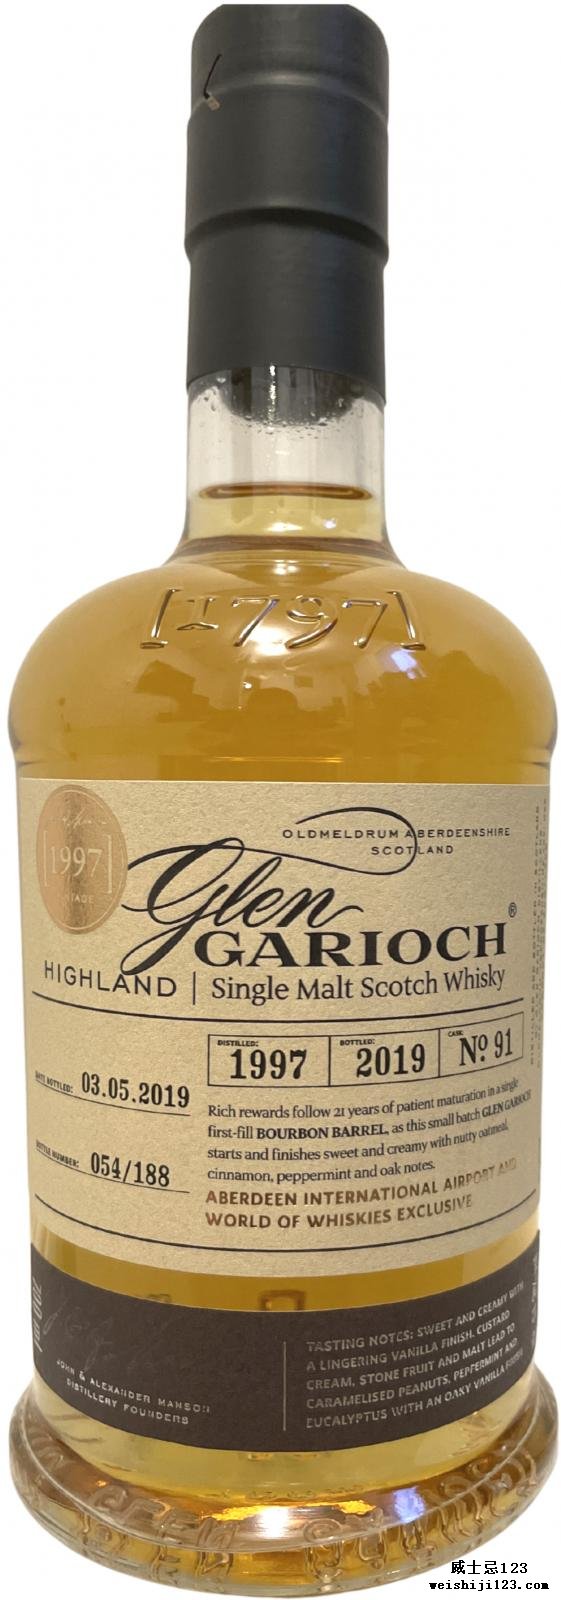 Glen Garioch 1997